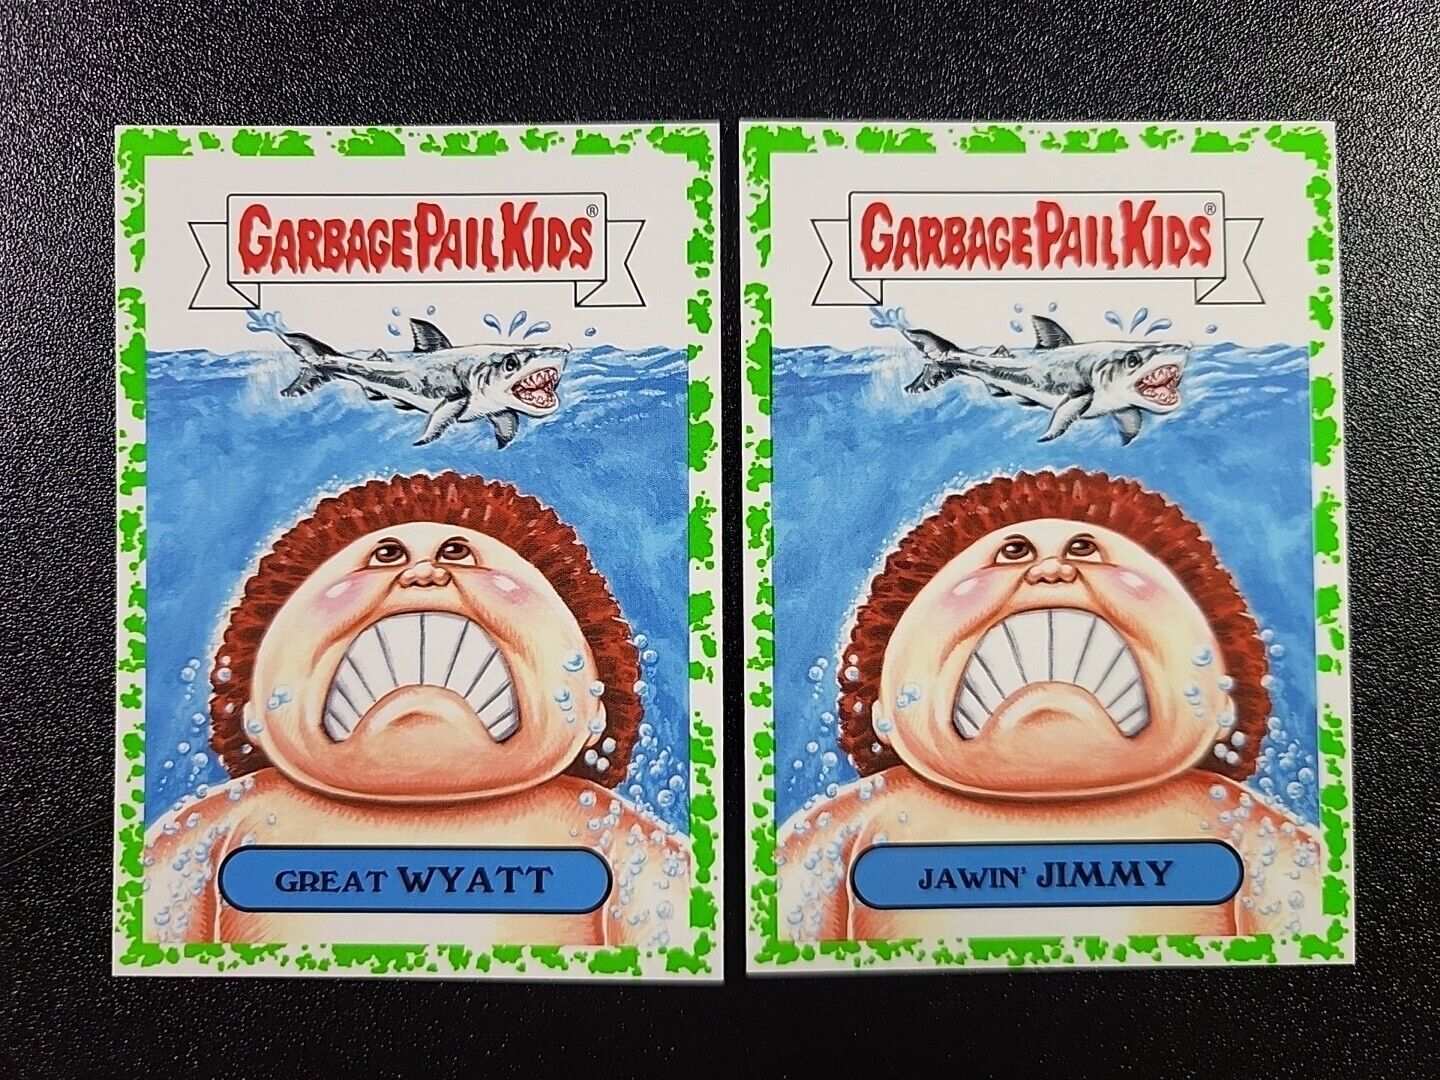 SP Green Jaws Steven Spielberg Roy Scheider Spoof 2 Card Set Garbage Pail Kids